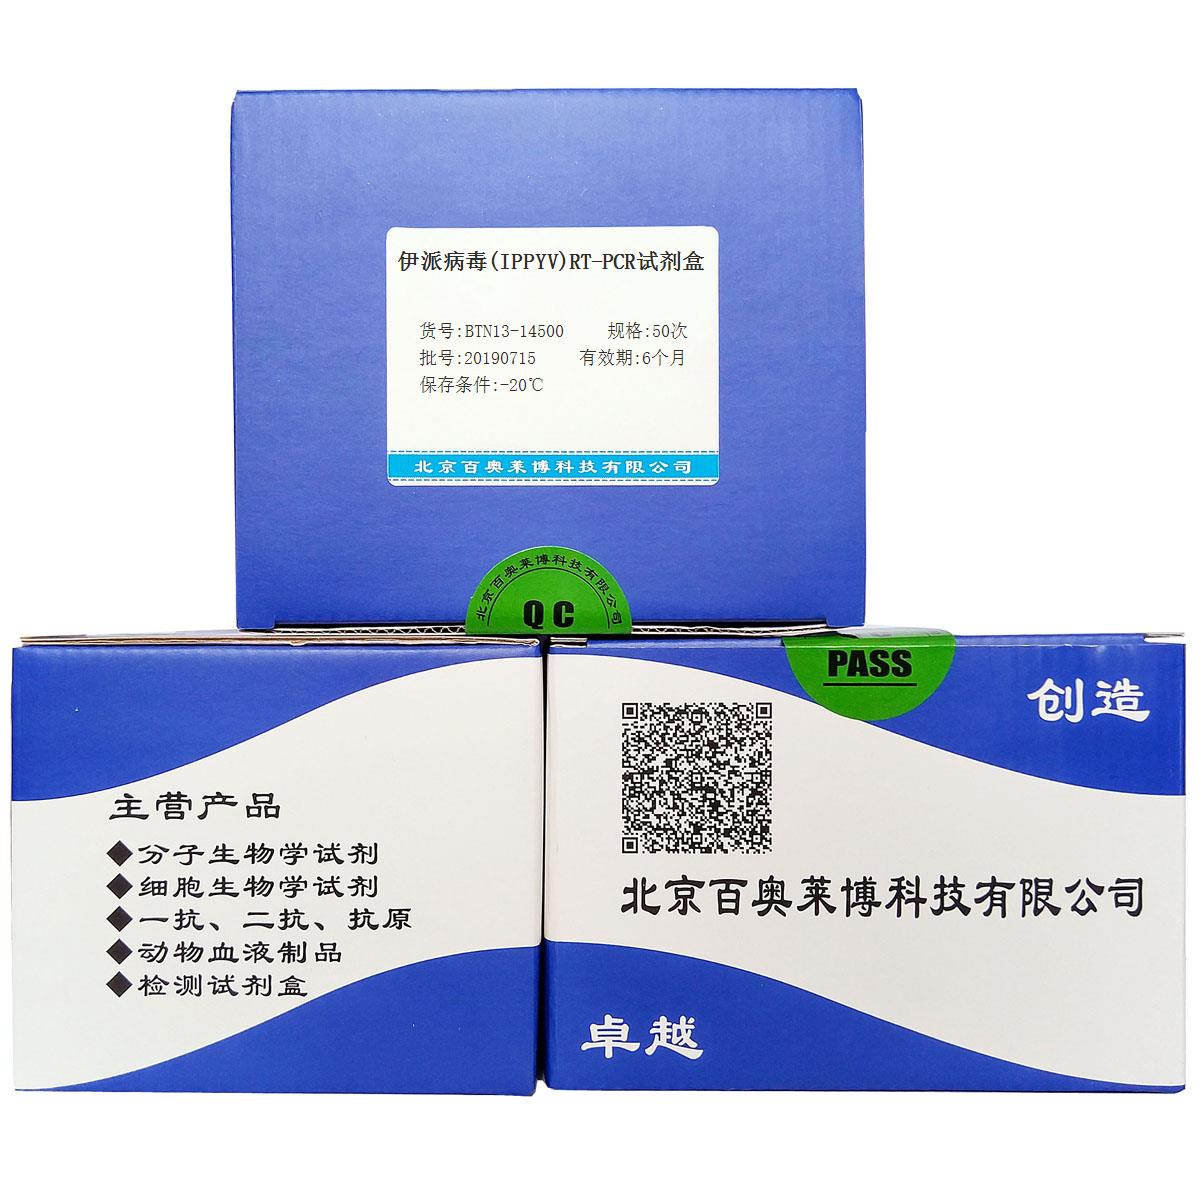 伊派病毒(IPPYV)RT-PCR试剂盒